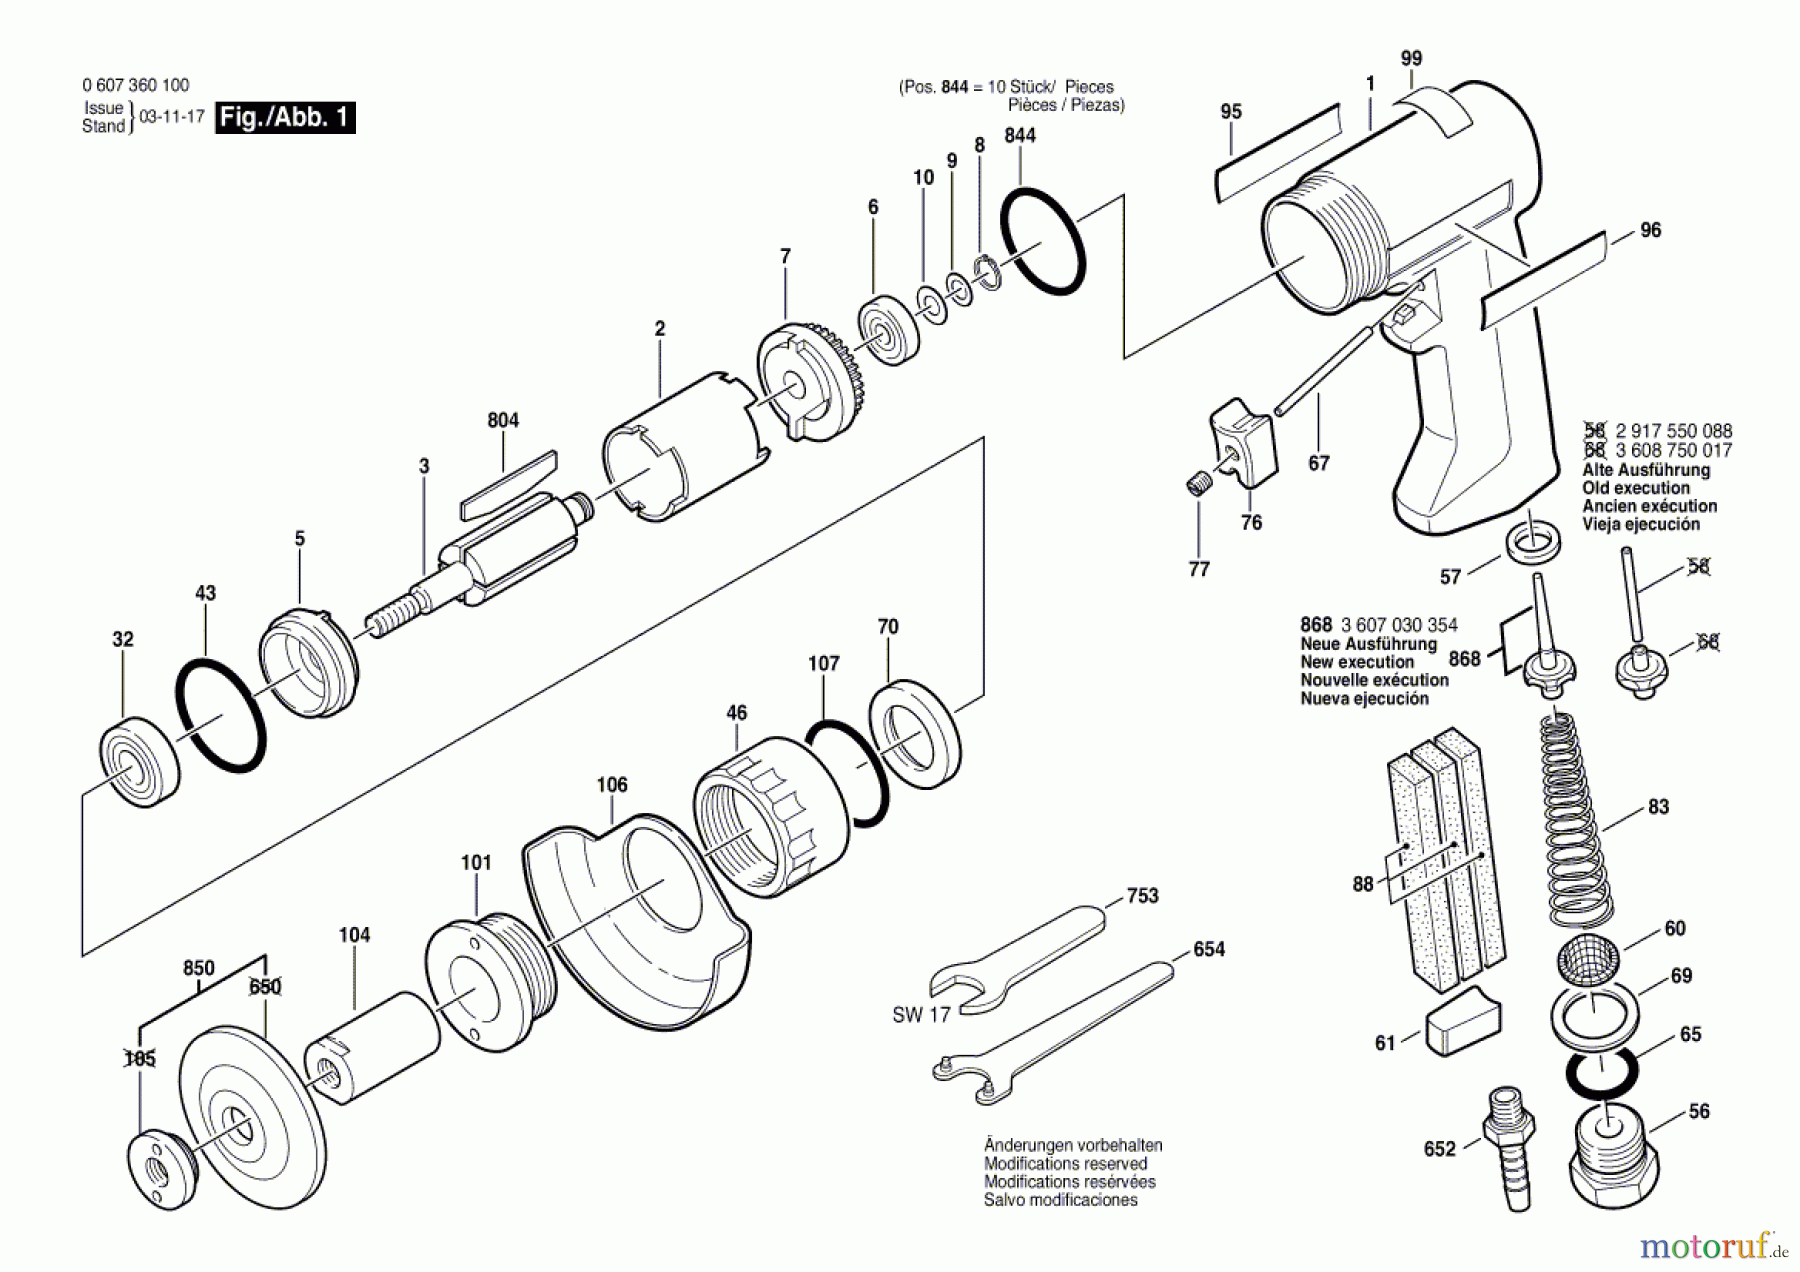  Bosch Werkzeug Pw-Vertikalschleifer 320 WATT-SERIE Seite 1